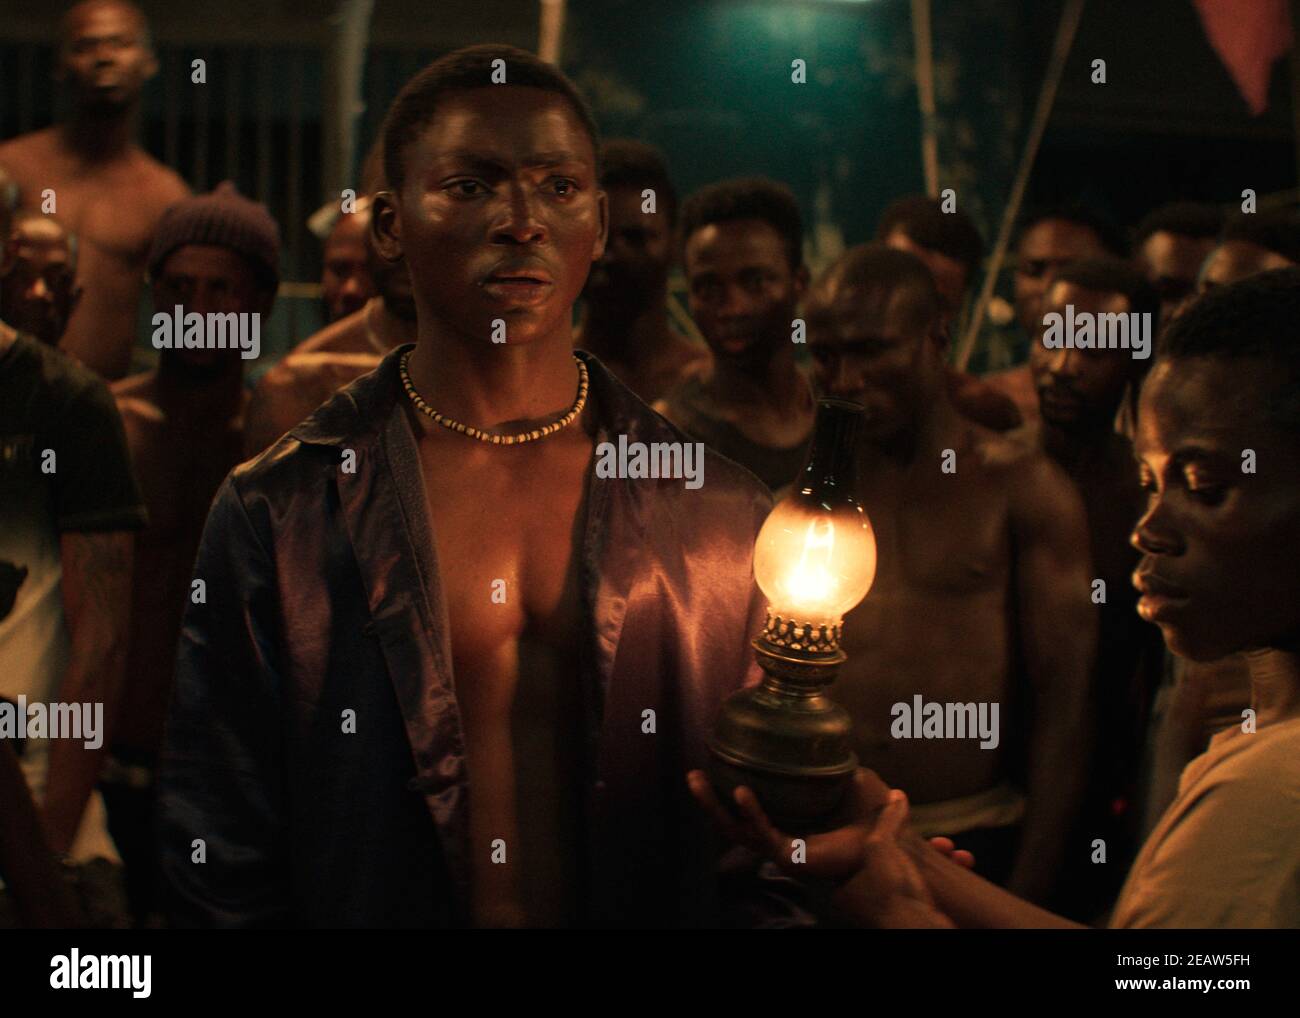 Die Nacht der Könige [La nuit des roi] (2020) unter der Regie von Philippe Lacôte AS und mit Bakary Koné als Roman, einem neu eingetroffenen Gefangenen, der den anderen Gefangenen eine Geschichte erzählen muss. Stockfoto